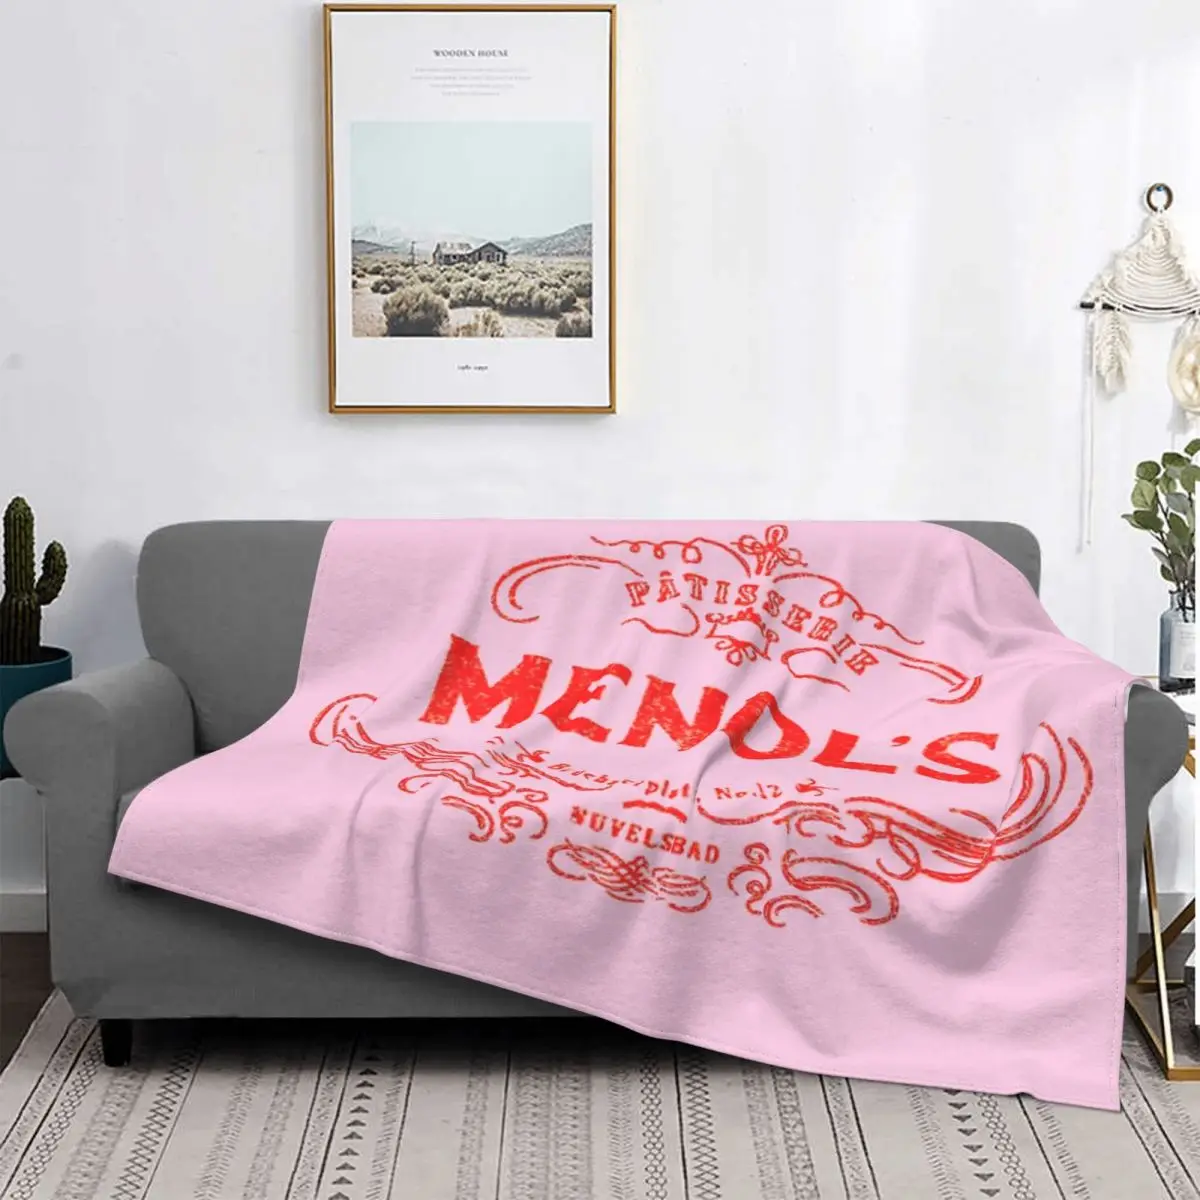 

Mendls-colcha de tela escoa para cama, Edredon, toalla, manta de verano a cuadros en el sofra